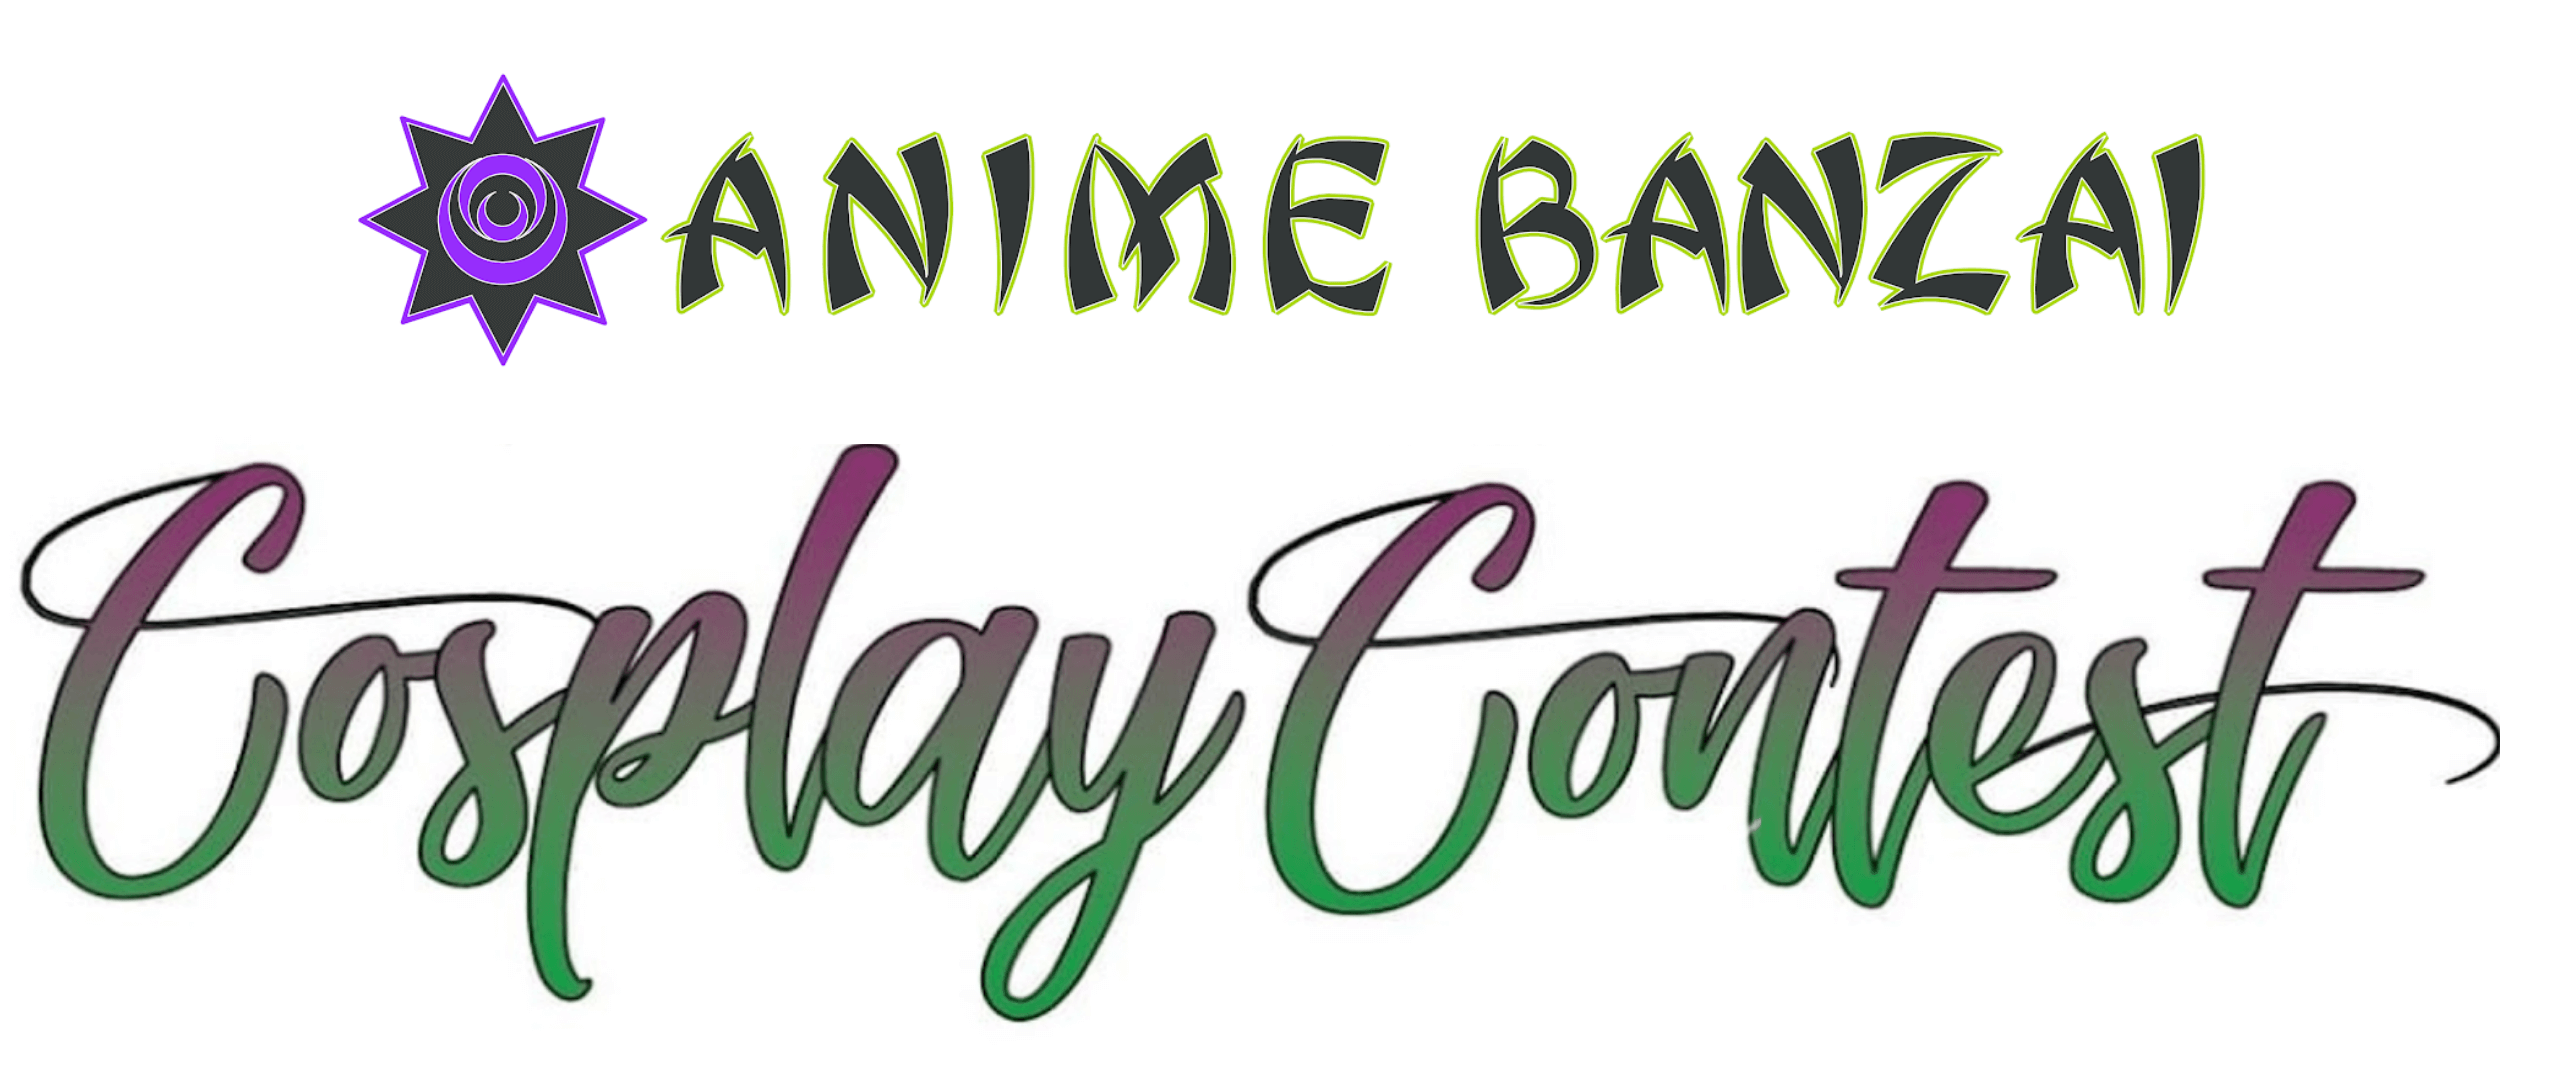 Anime Banzai Cosplay Contest Logo